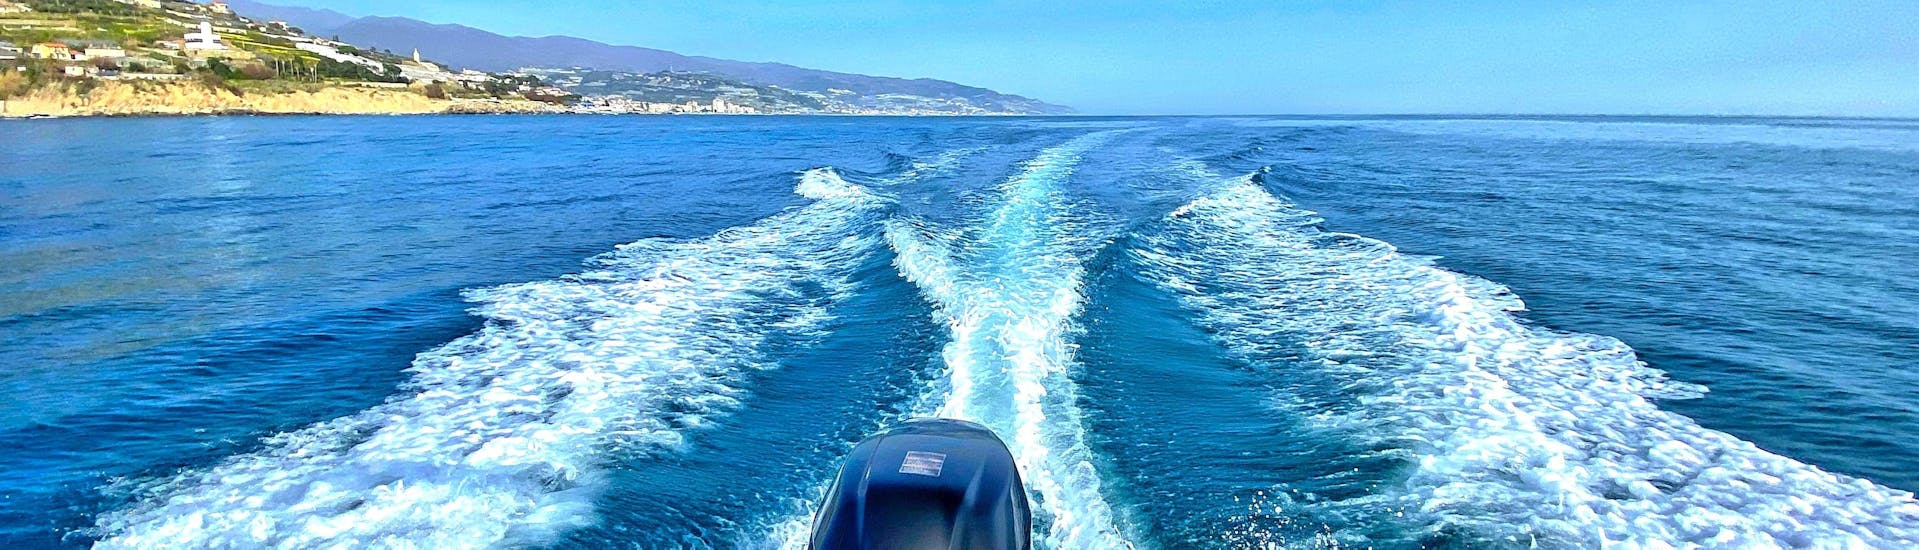 Barca a motore di Liguria in Barca con mare e paesaggio all'orizzonte.